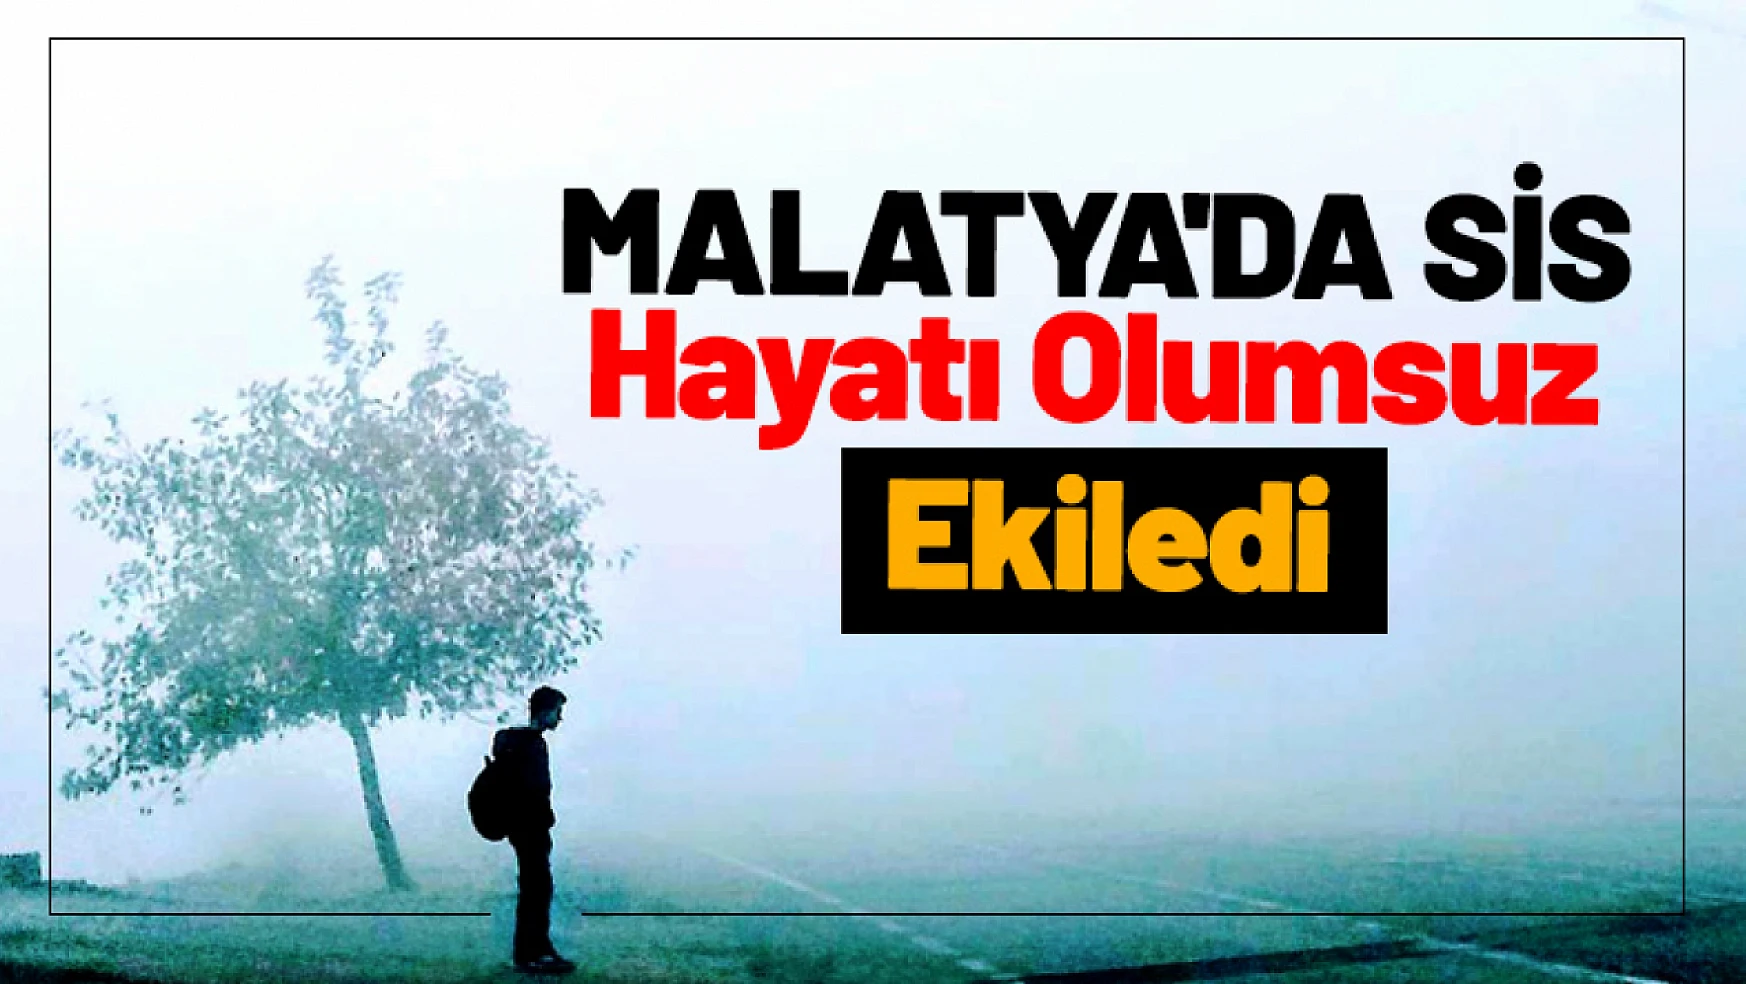 Malatya'da Sis Hayatı Olumsuz Etkiledi...